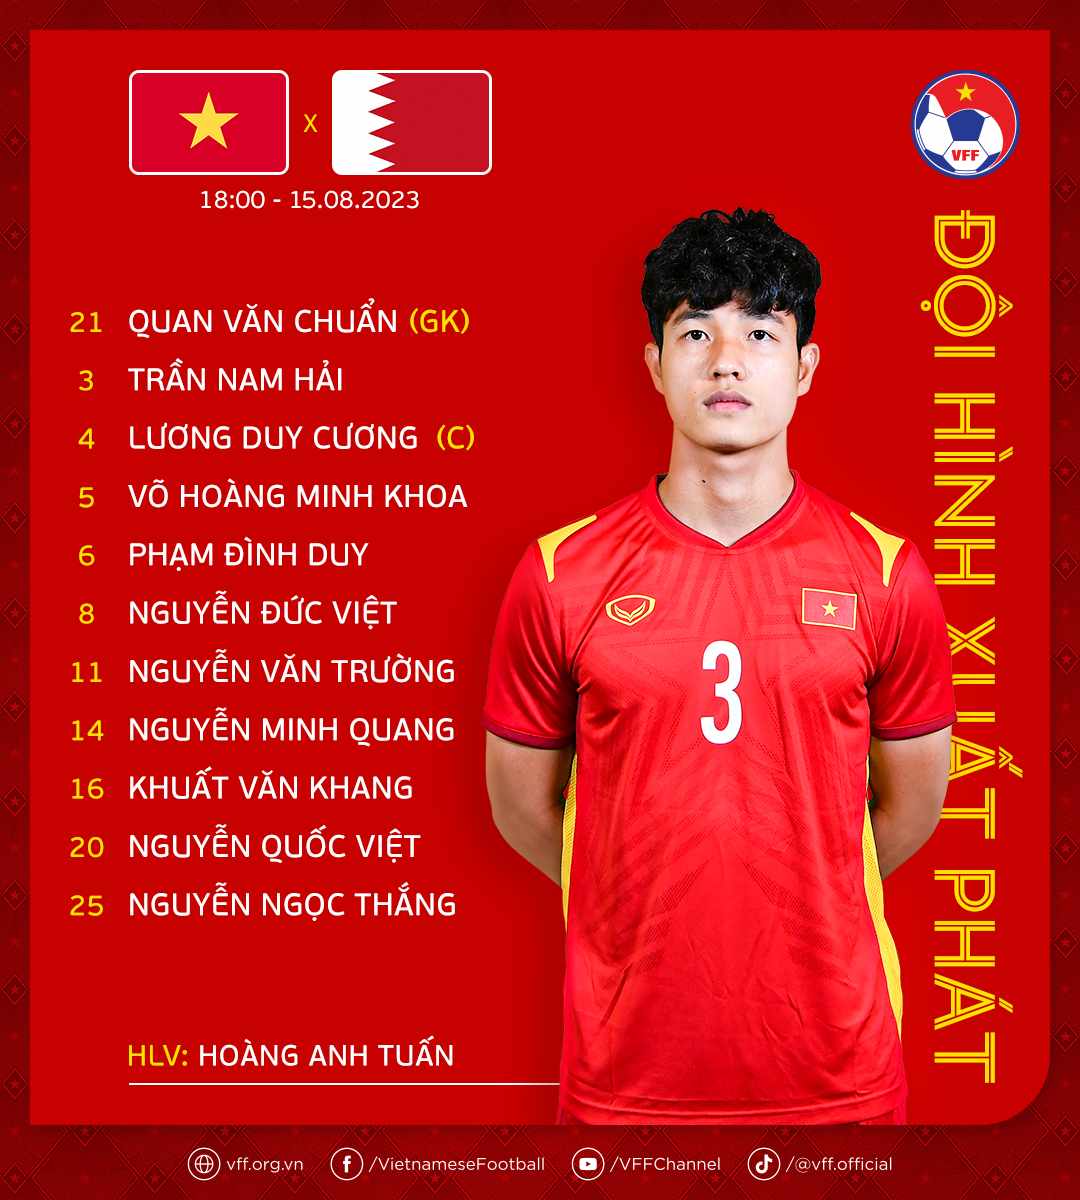 Lương Duy Cương làm đội trưởng trong trận đầu ra quân của U23 Việt Nam - Ảnh 1.